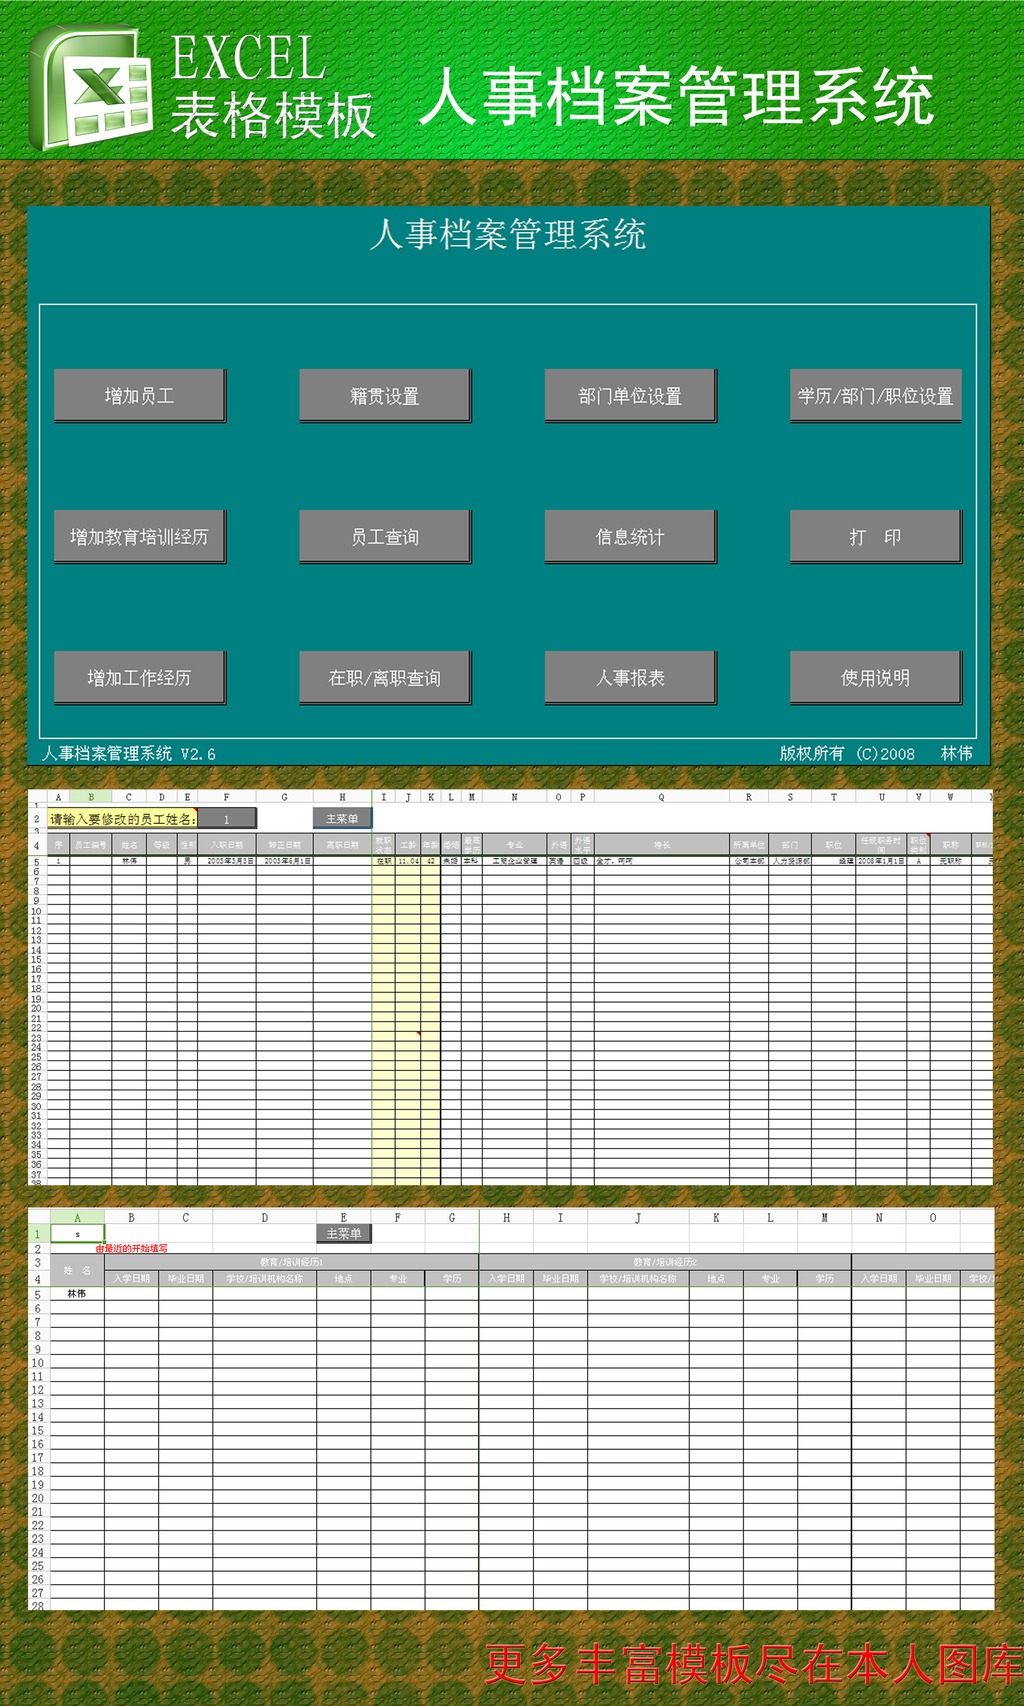 人事档案管理系统EXCEL模板下载(图片编号:1